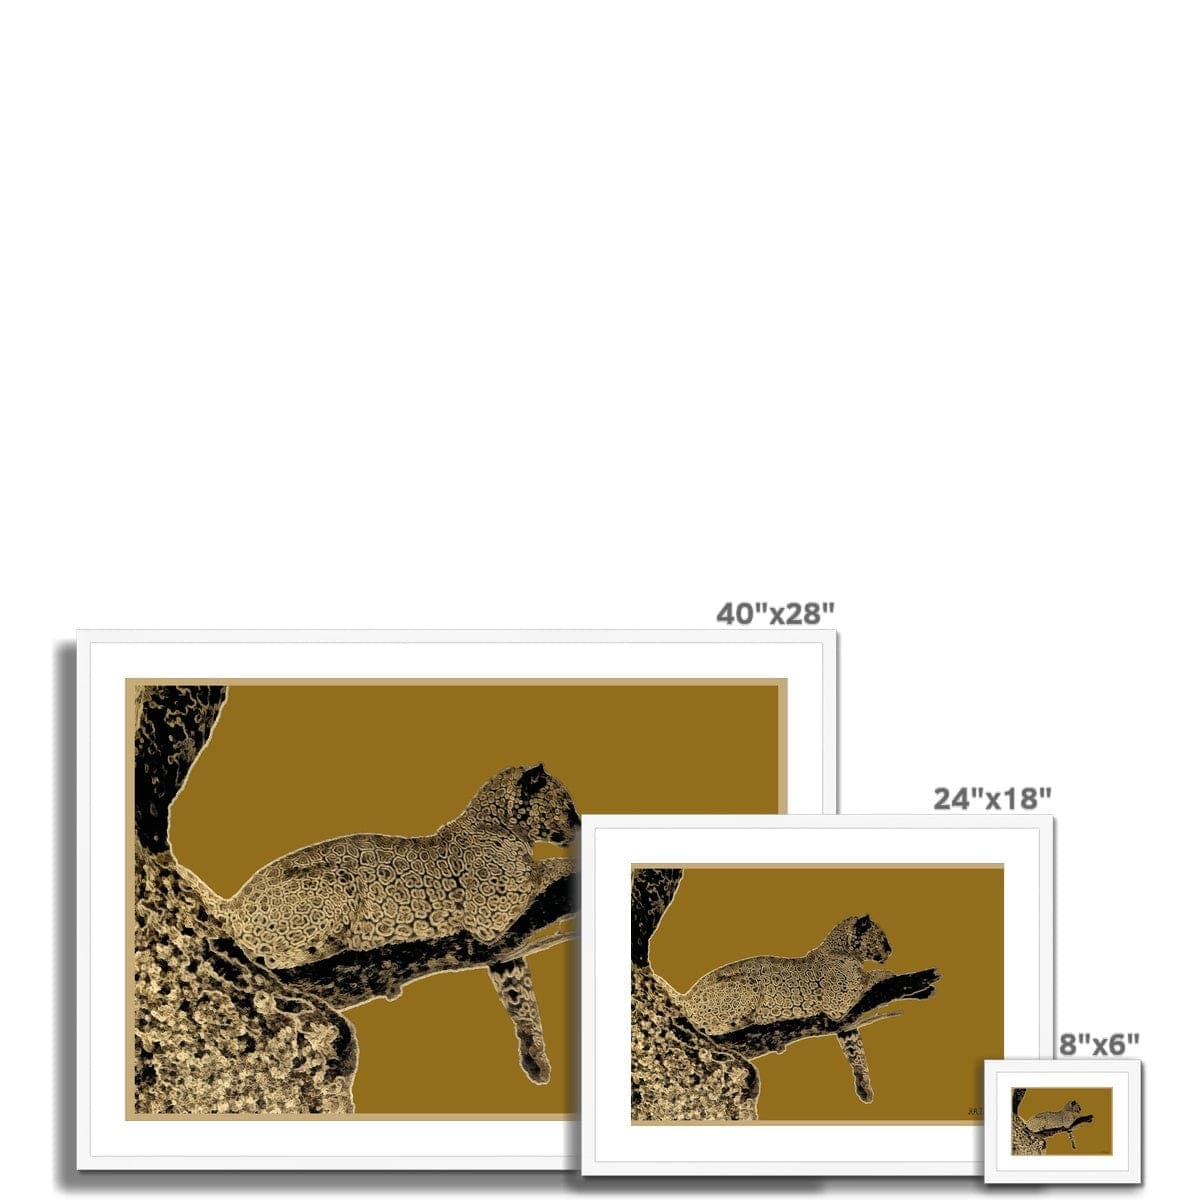 Leopard Gold on Black Framed & Mounted Print